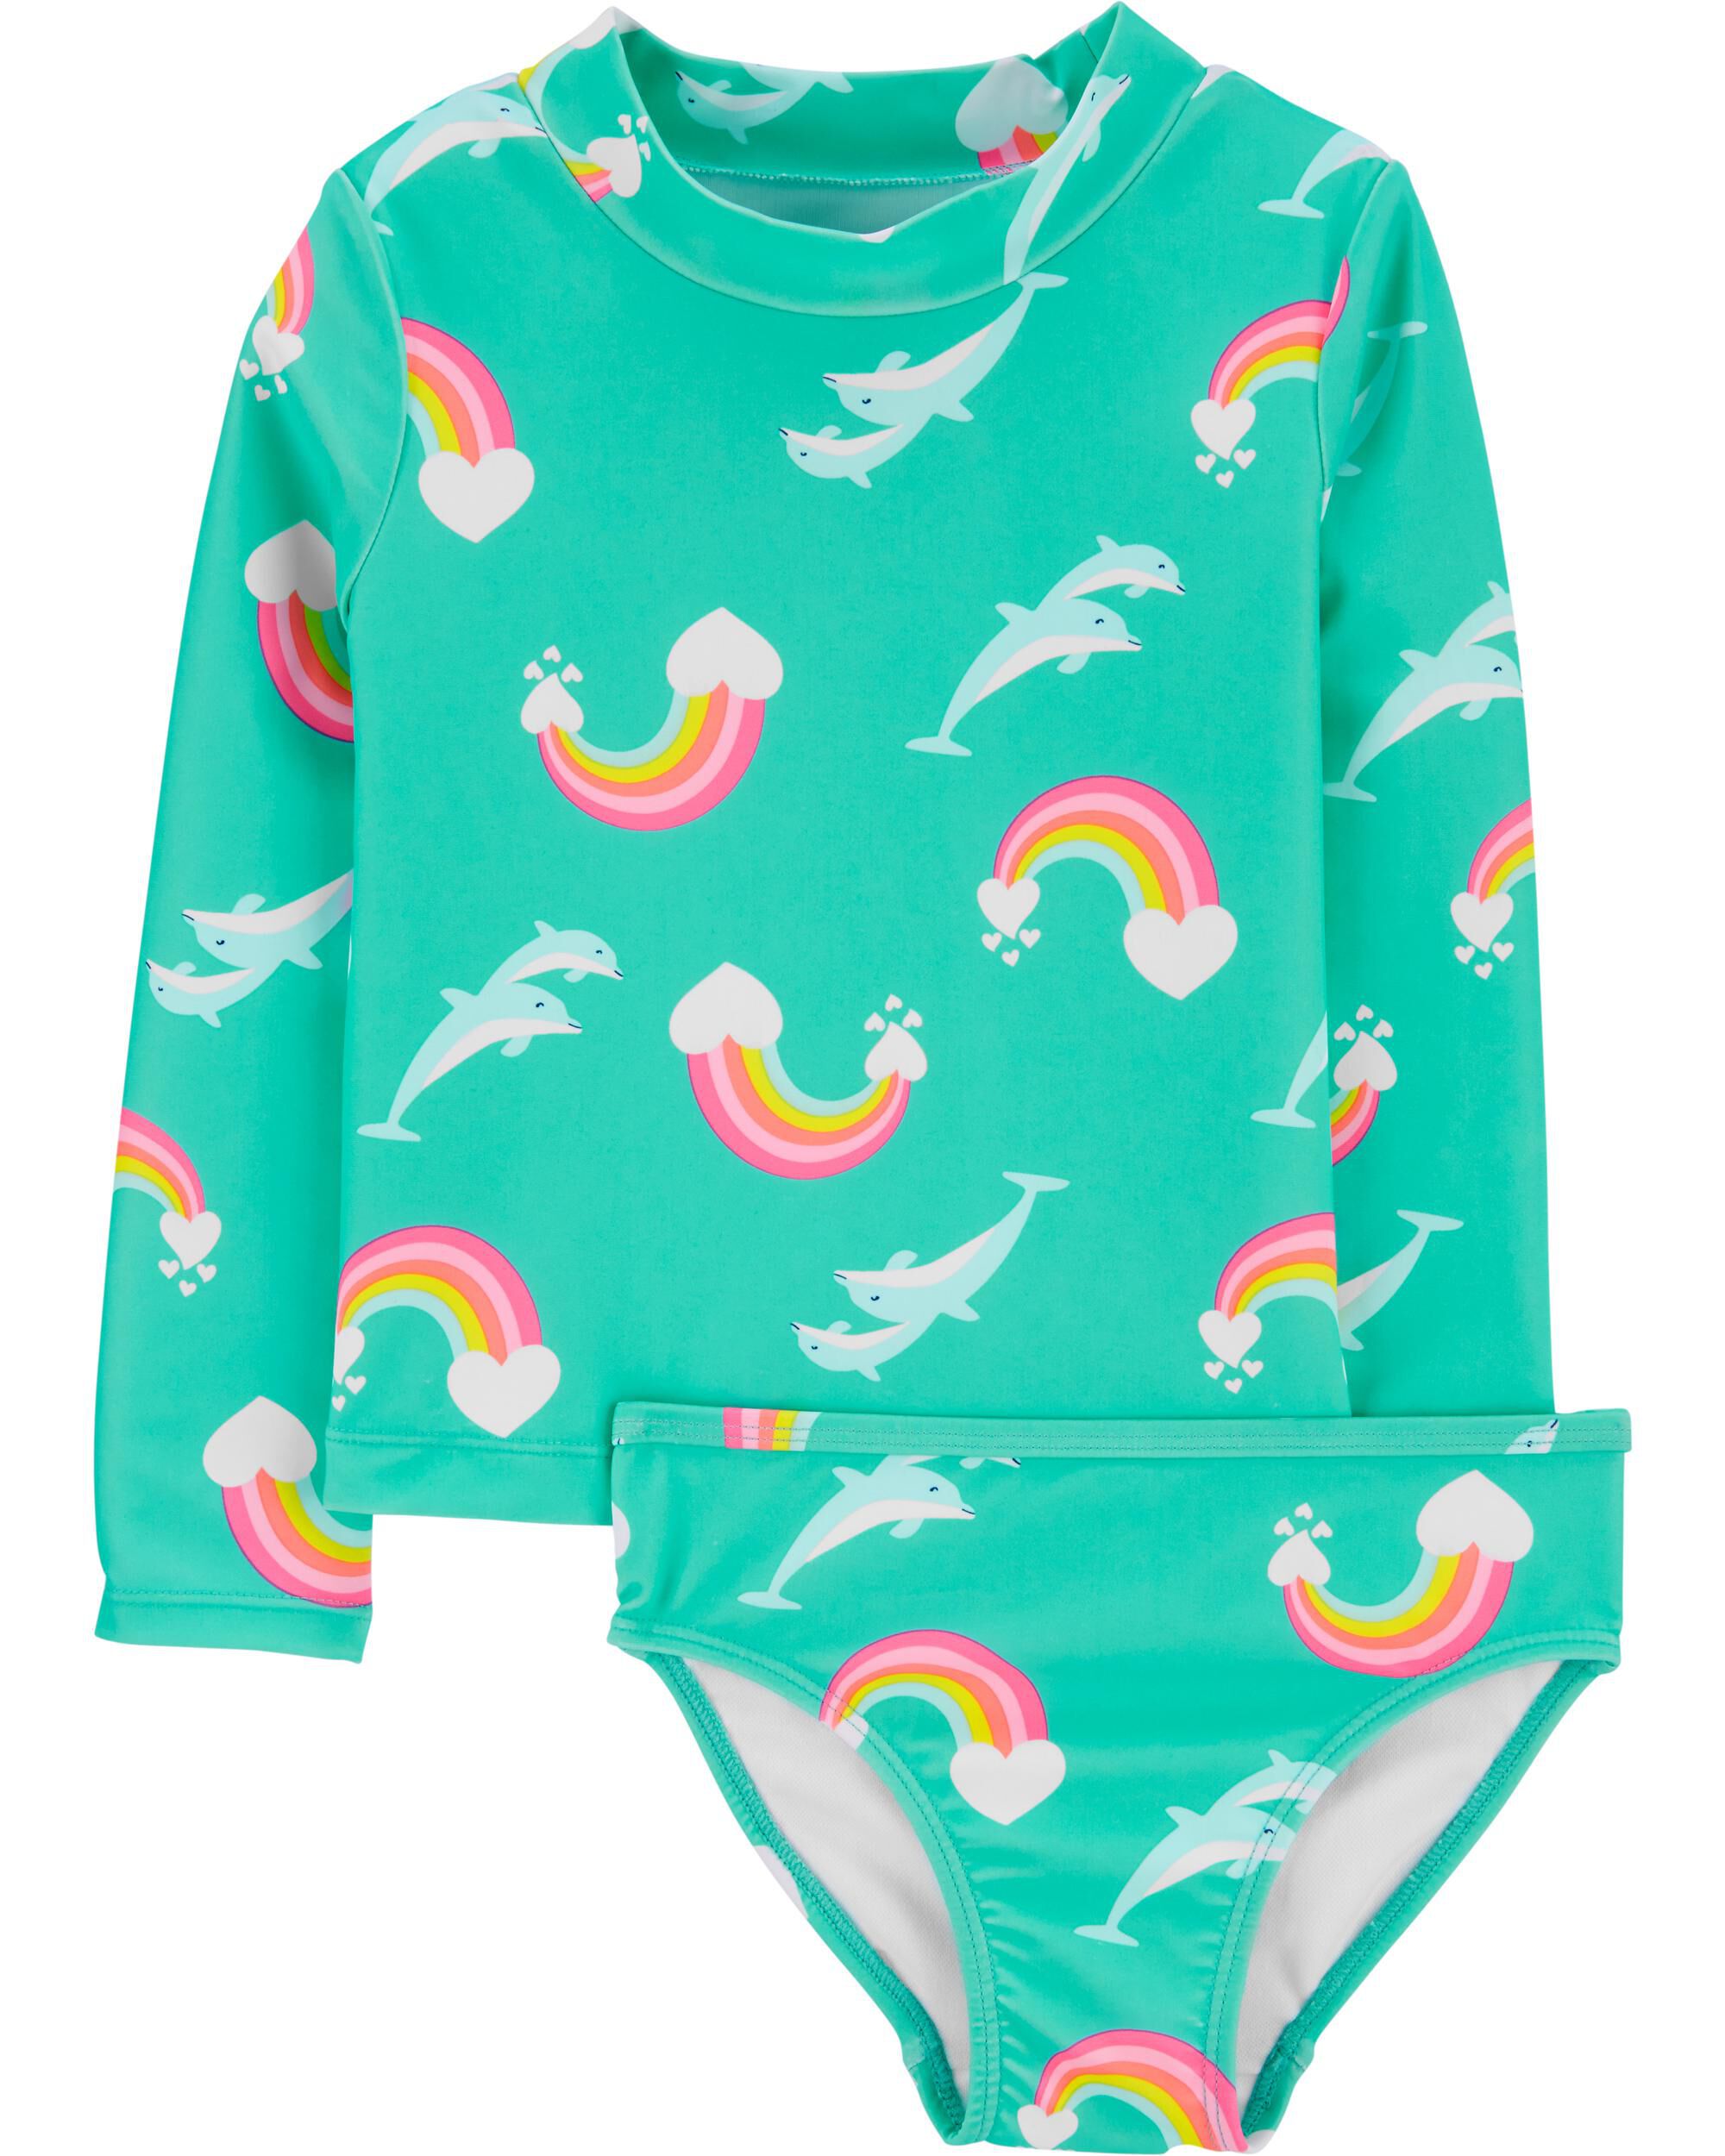 kavkas Toddler Girls 2-Piece Rash Guard Set Swimsuit Bathing Suits